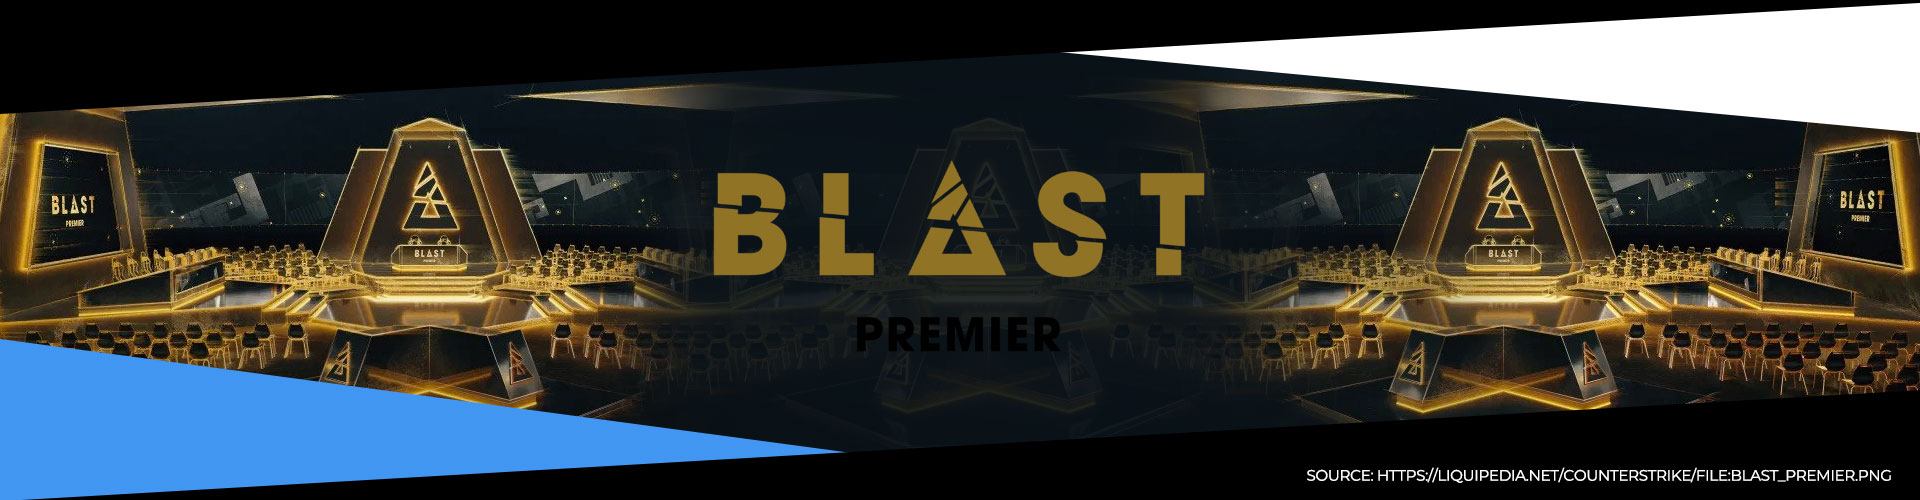 All information du behöver inför BLAST Premier: Spring 2020.